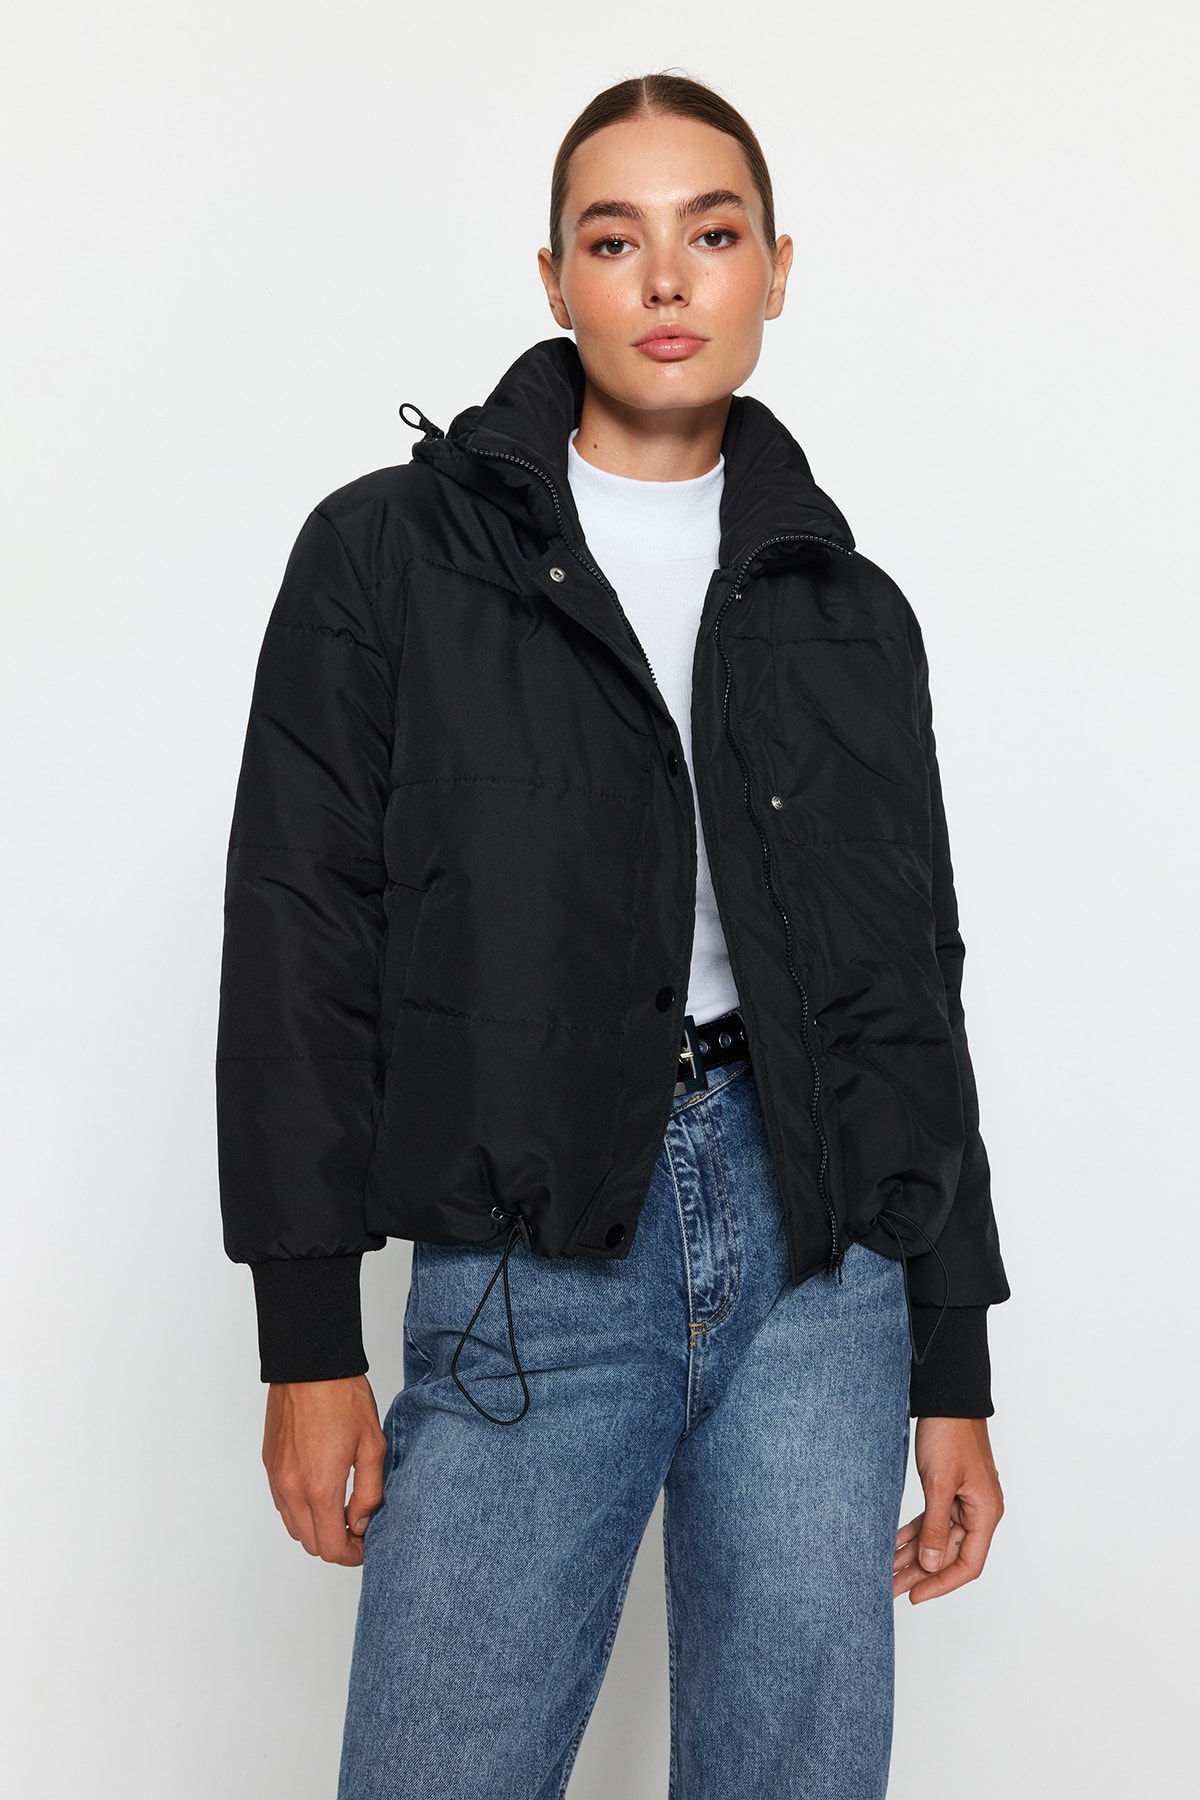 Куртка-пуховик Trendyol оверсайз водоотталкивающая стеганая с капюшоном, черный куртка стеганая средней длины на молнии с капюшоном l черный